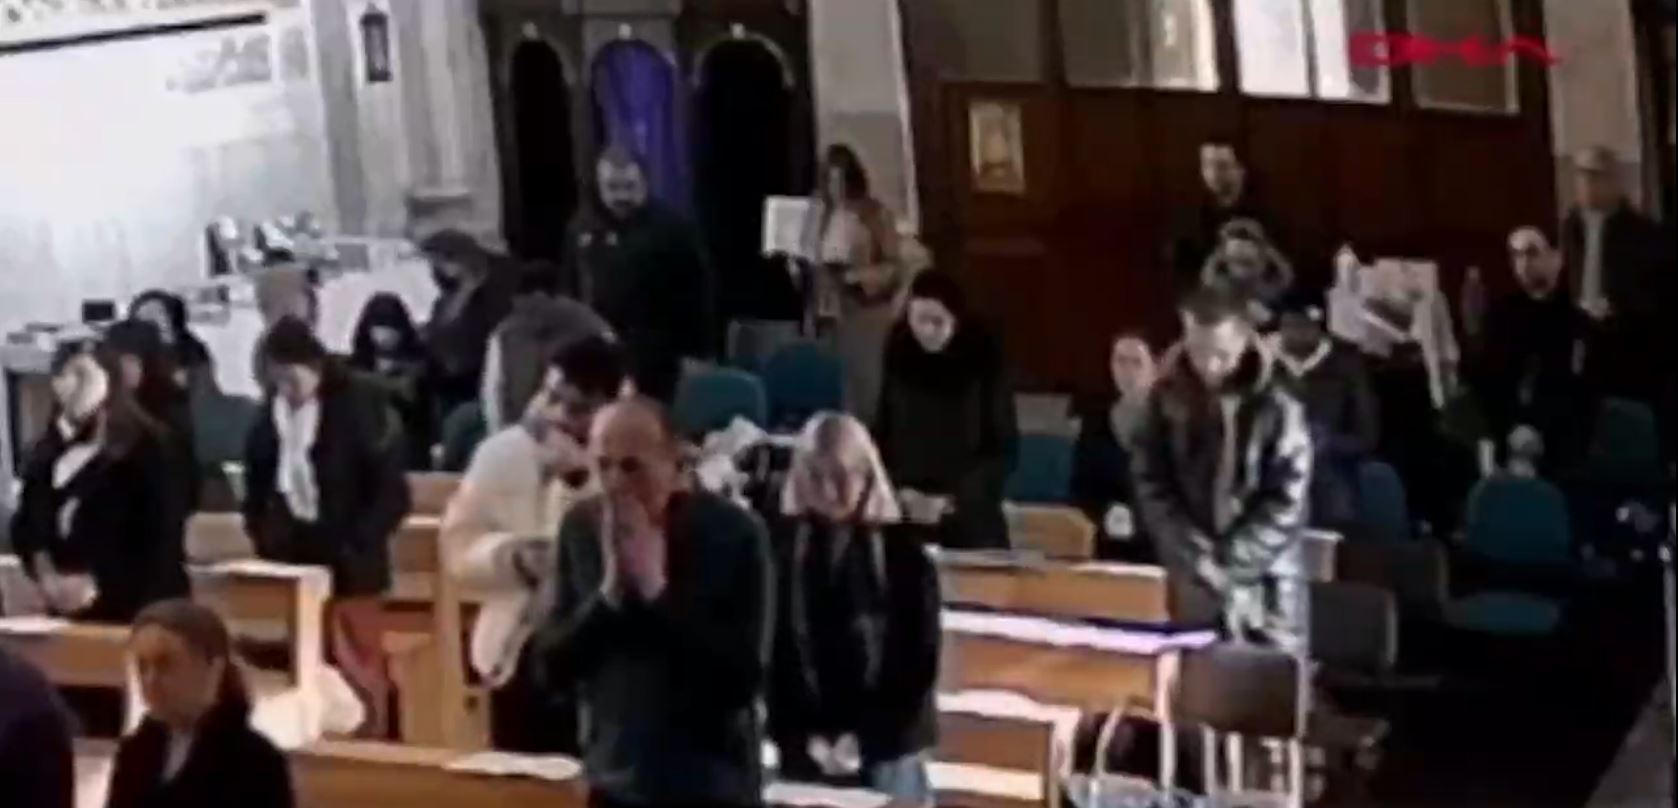 Sicherheitsaufnahmen aus dem Inneren der Kirche zeigen Menschen, die am Sonntagsgottesdienst teilnehmen